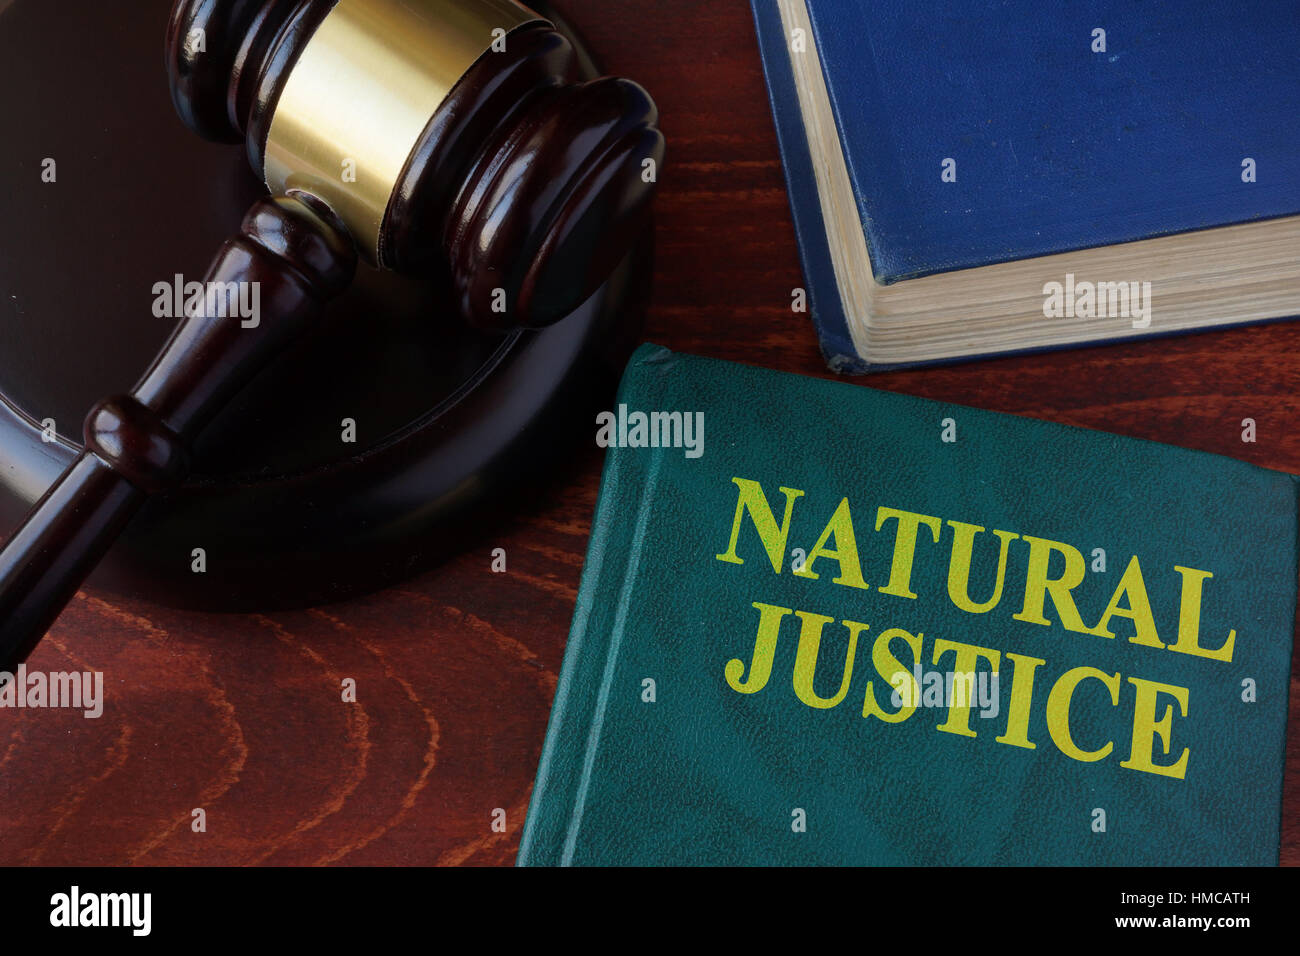 Libro con el título de la justicia natural y martillo. Foto de stock